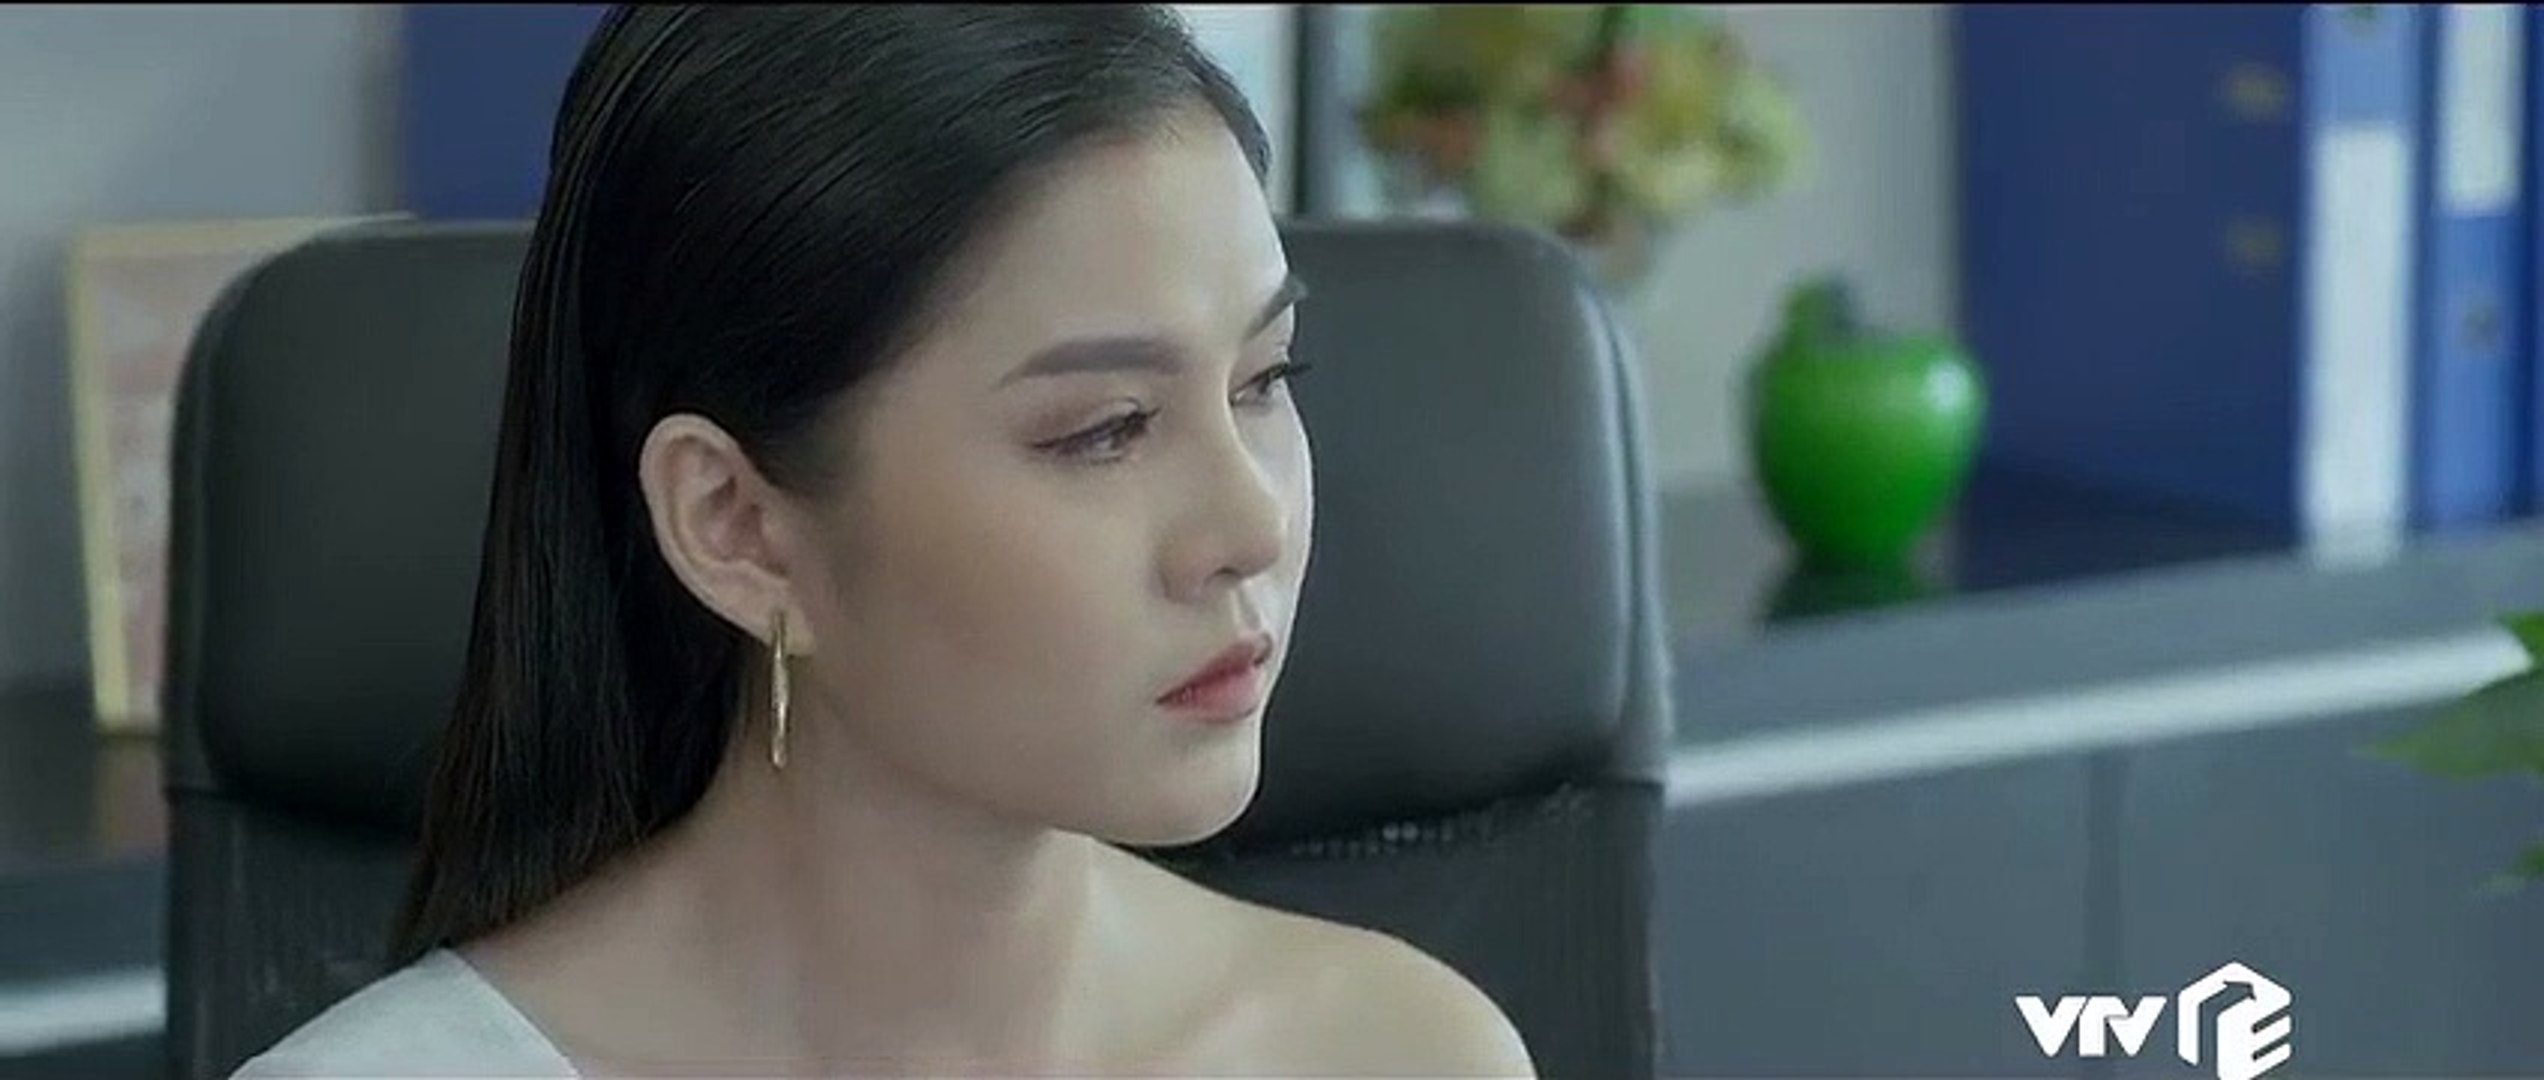 Yêu Thì Ghét Thôi - Tập 3 | Phim Việt Nam 2020 | Phim hay VTV3 | Phim Yeu Thi Ghet Thoi VTV3